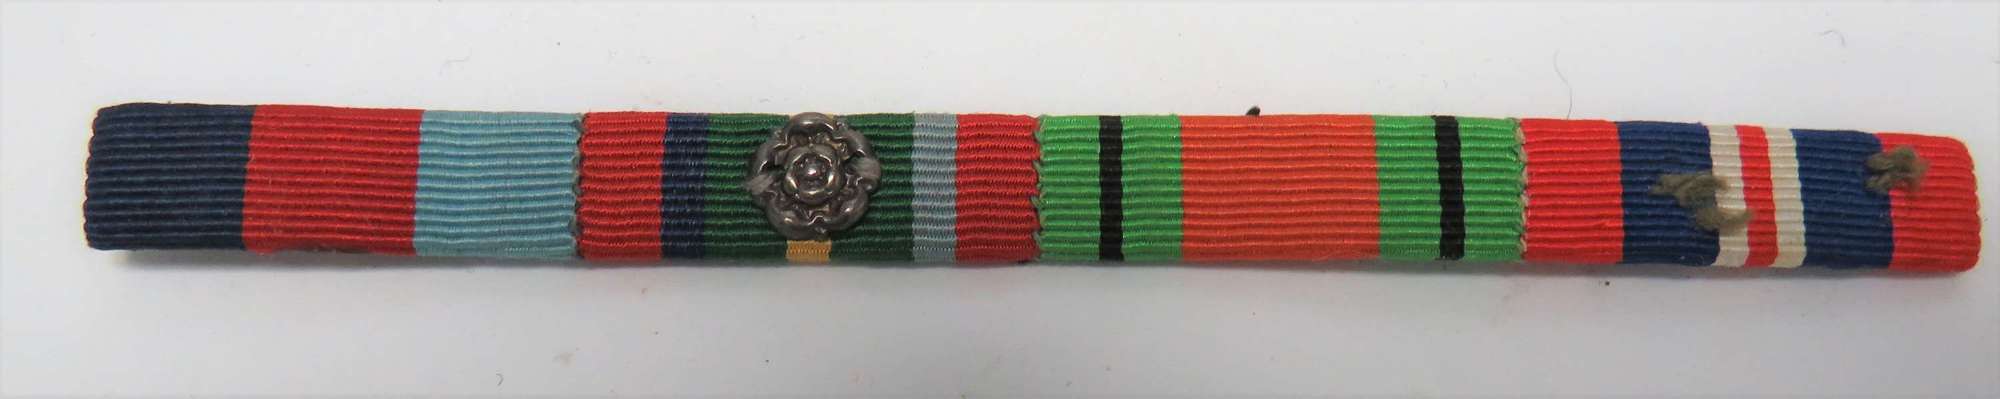 WW2 Burma Star Medal Group Bar